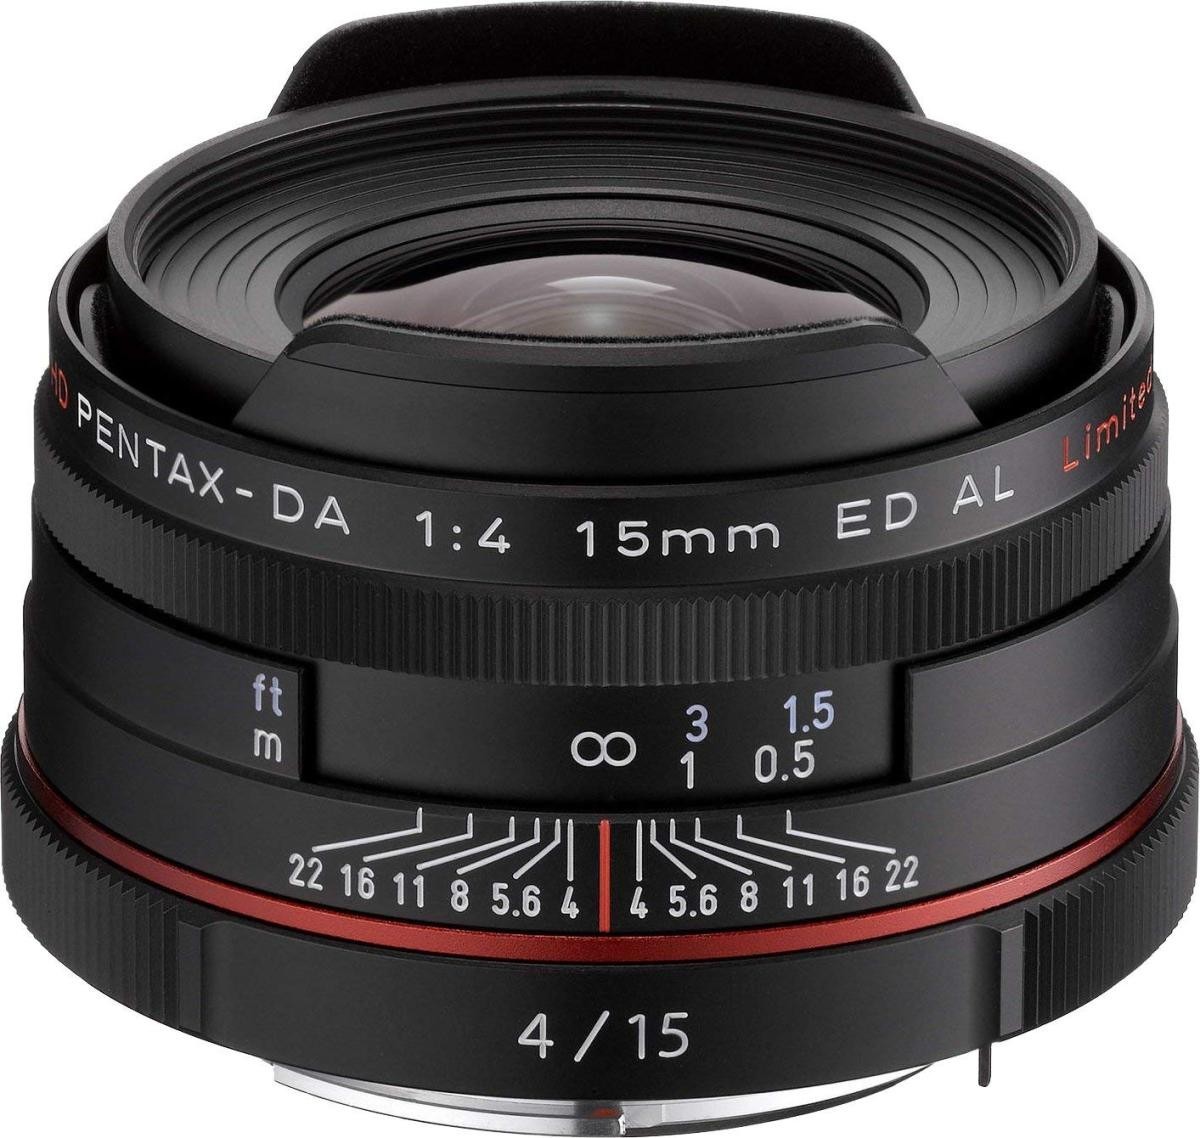 人気定番 15mmF4 DA PENTAX 美品 中古 ED 交換レンズ レンズ ペンタックス ブラック Limited AL ペンタックス